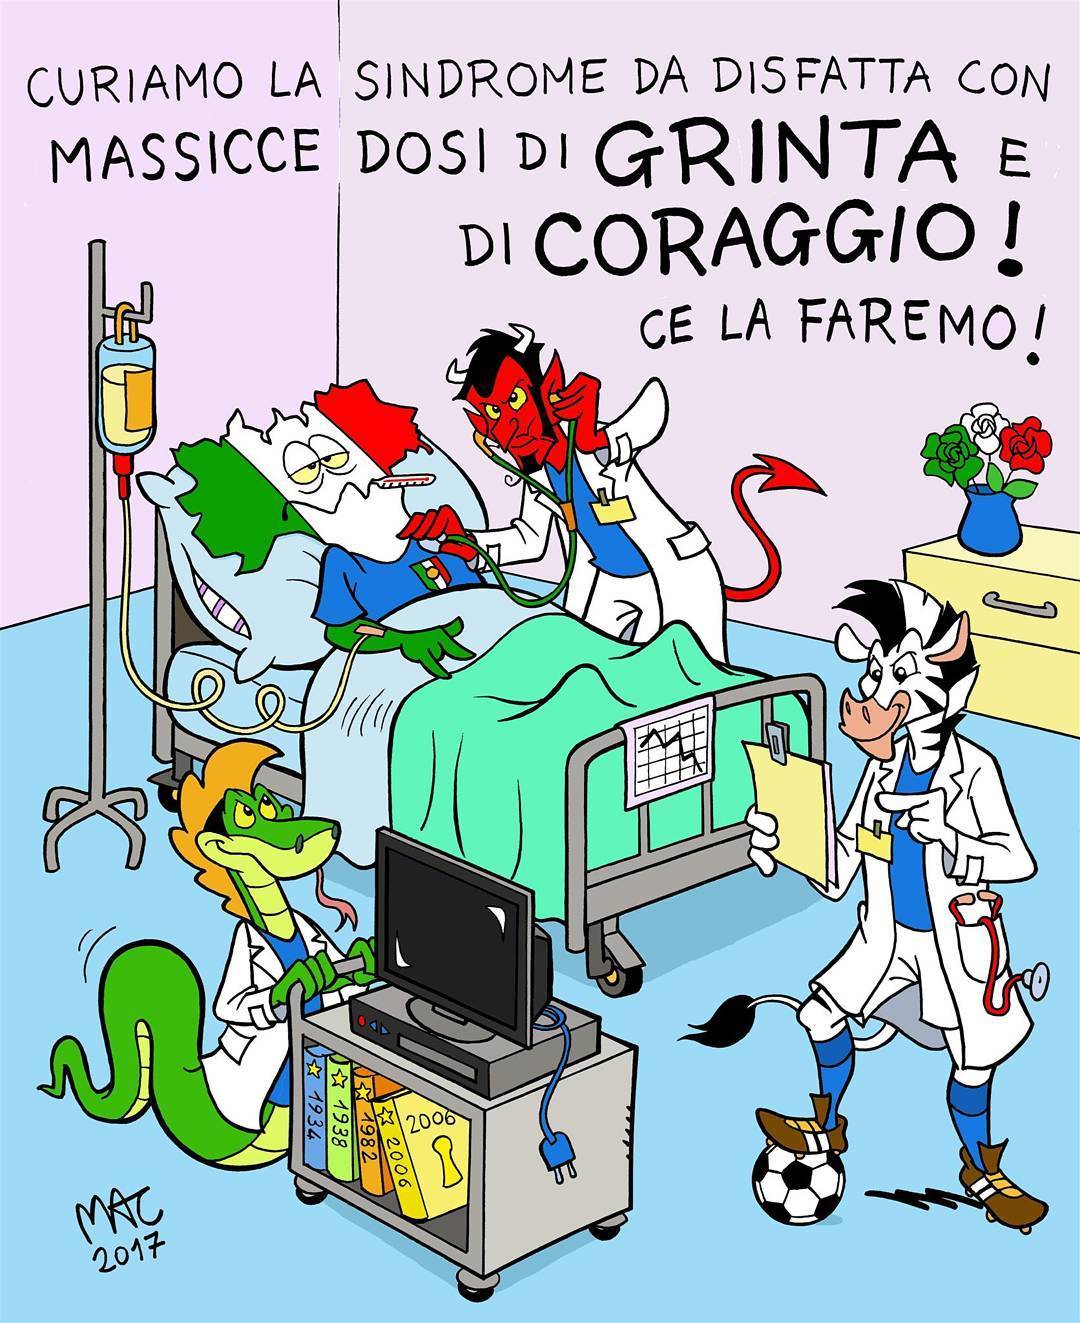 Итальянский футбол в карикатурах: апокалипсис в сборной (Фото) - изображение 5